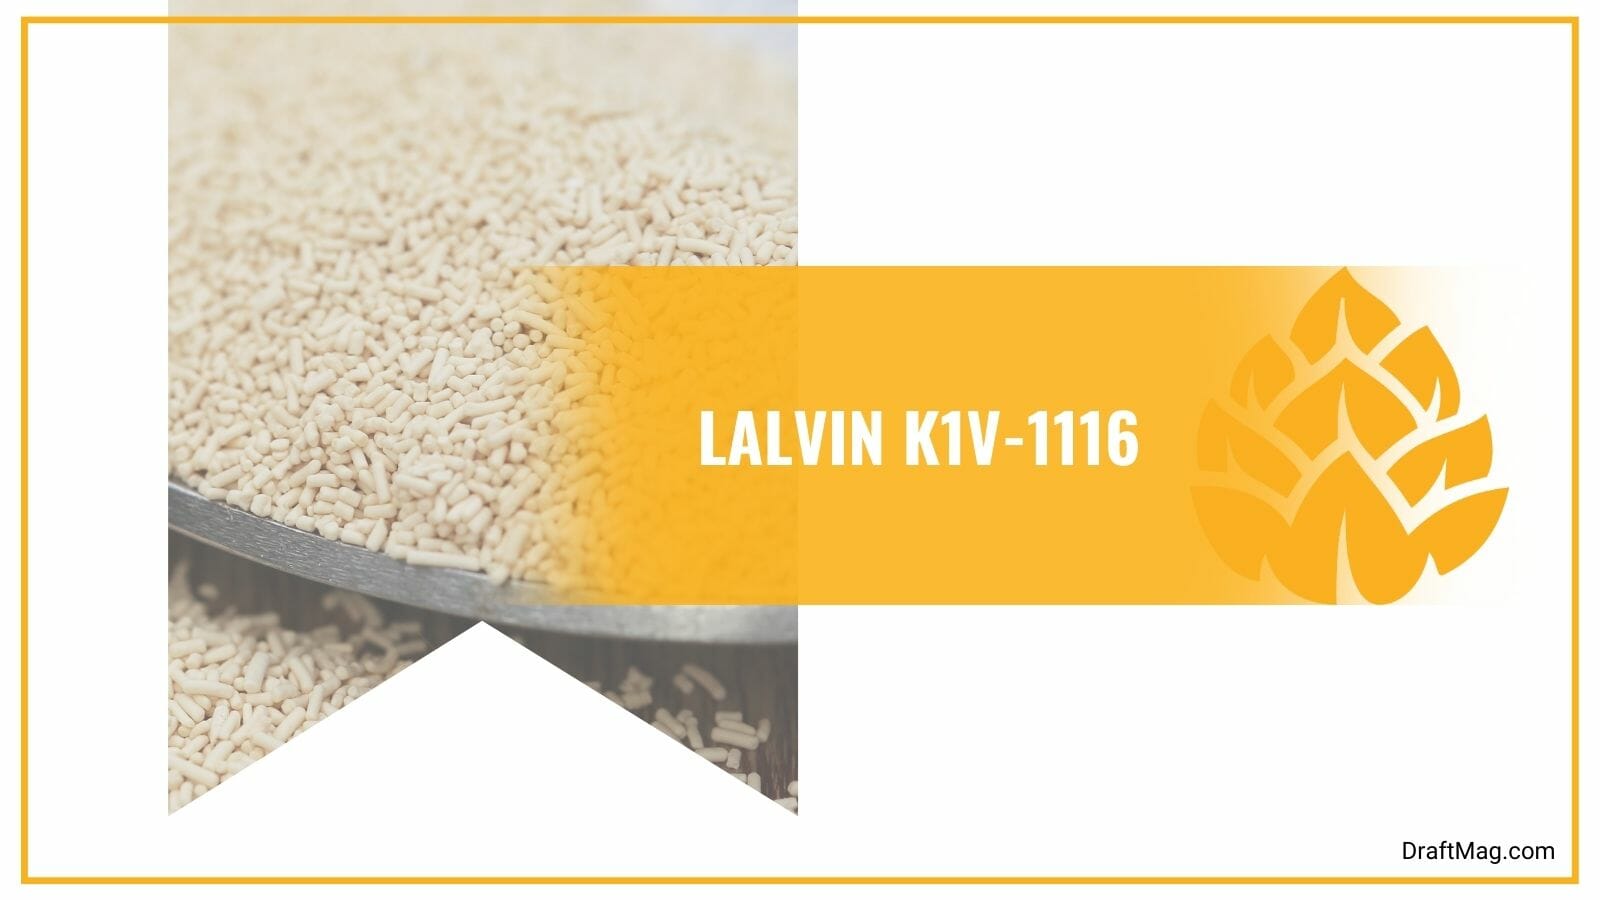 Lalvin K1V-1116